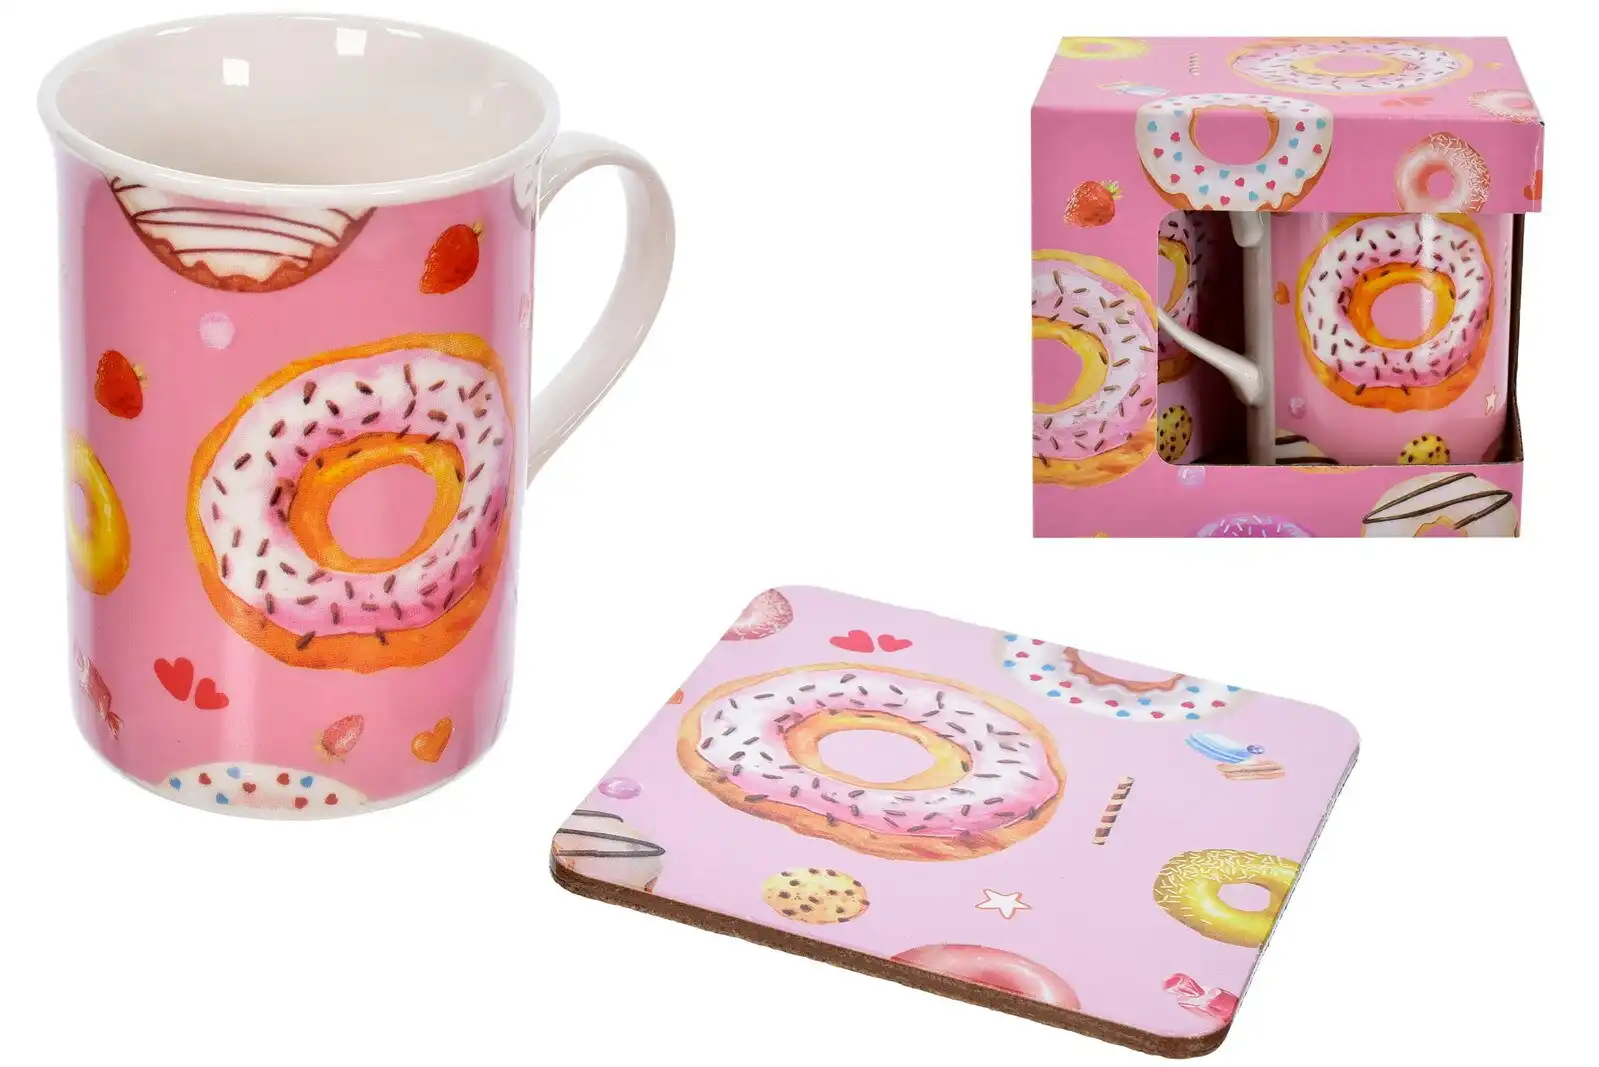 Doughnut Design Mug & Coaster Set